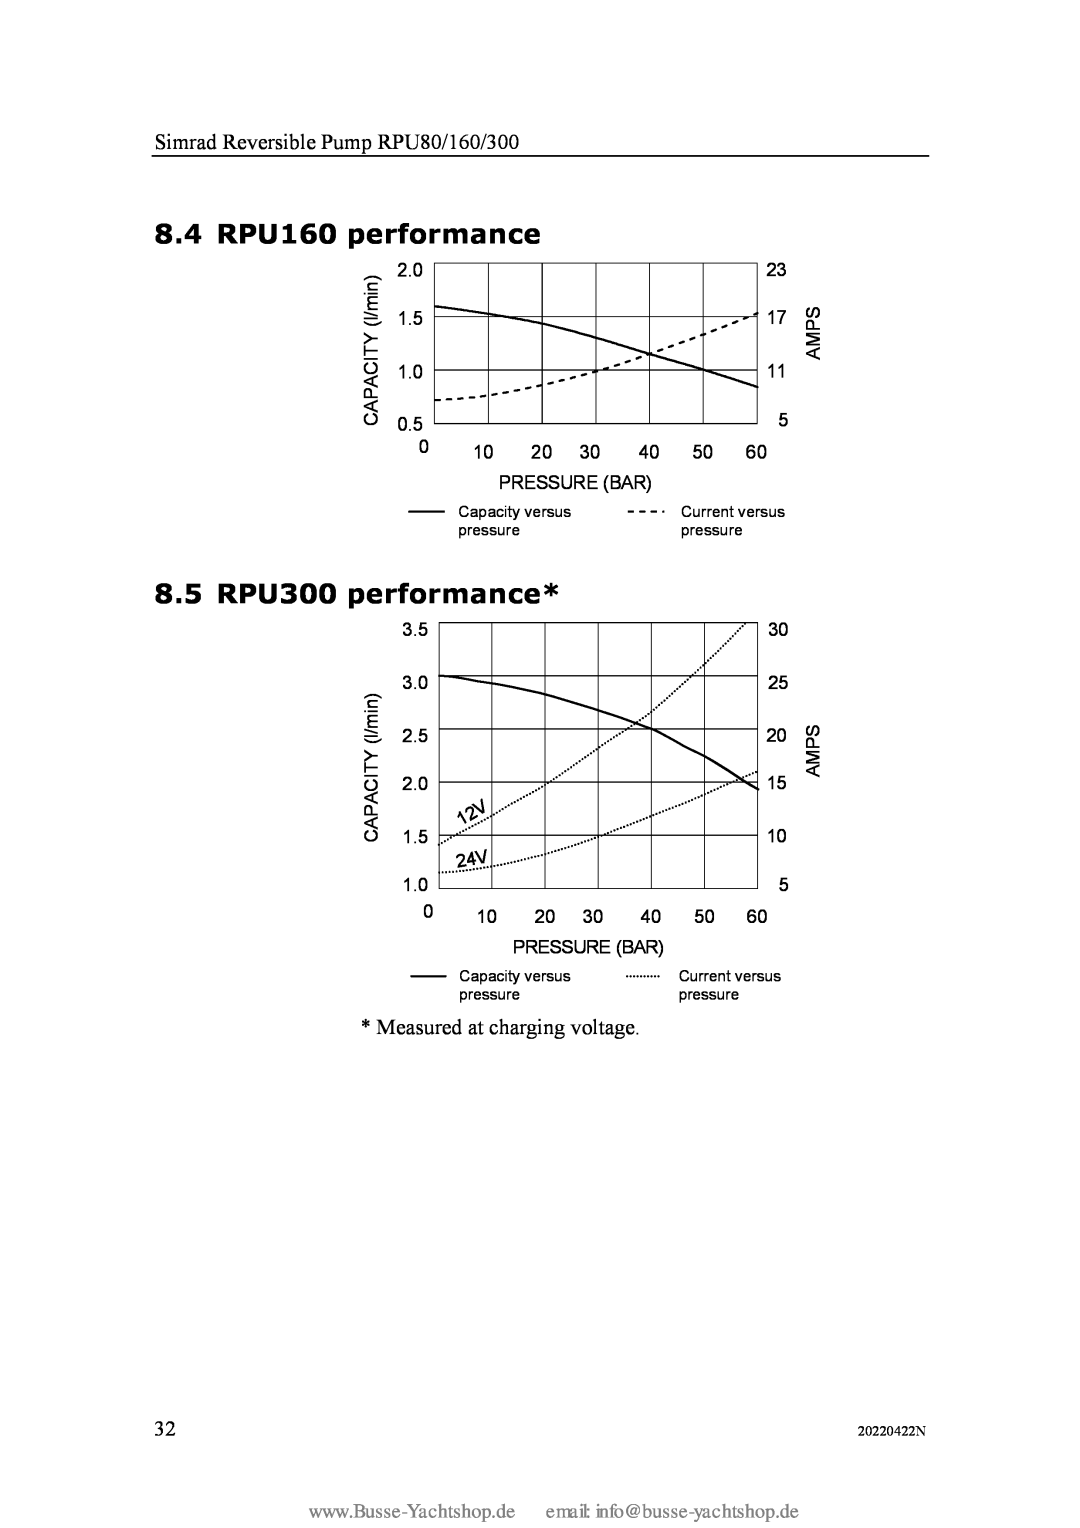 Simran instruction manual 8.4 RPU160 performance, 8.5 RPU300 performance, Simrad Reversible Pump RPU80/160/300 